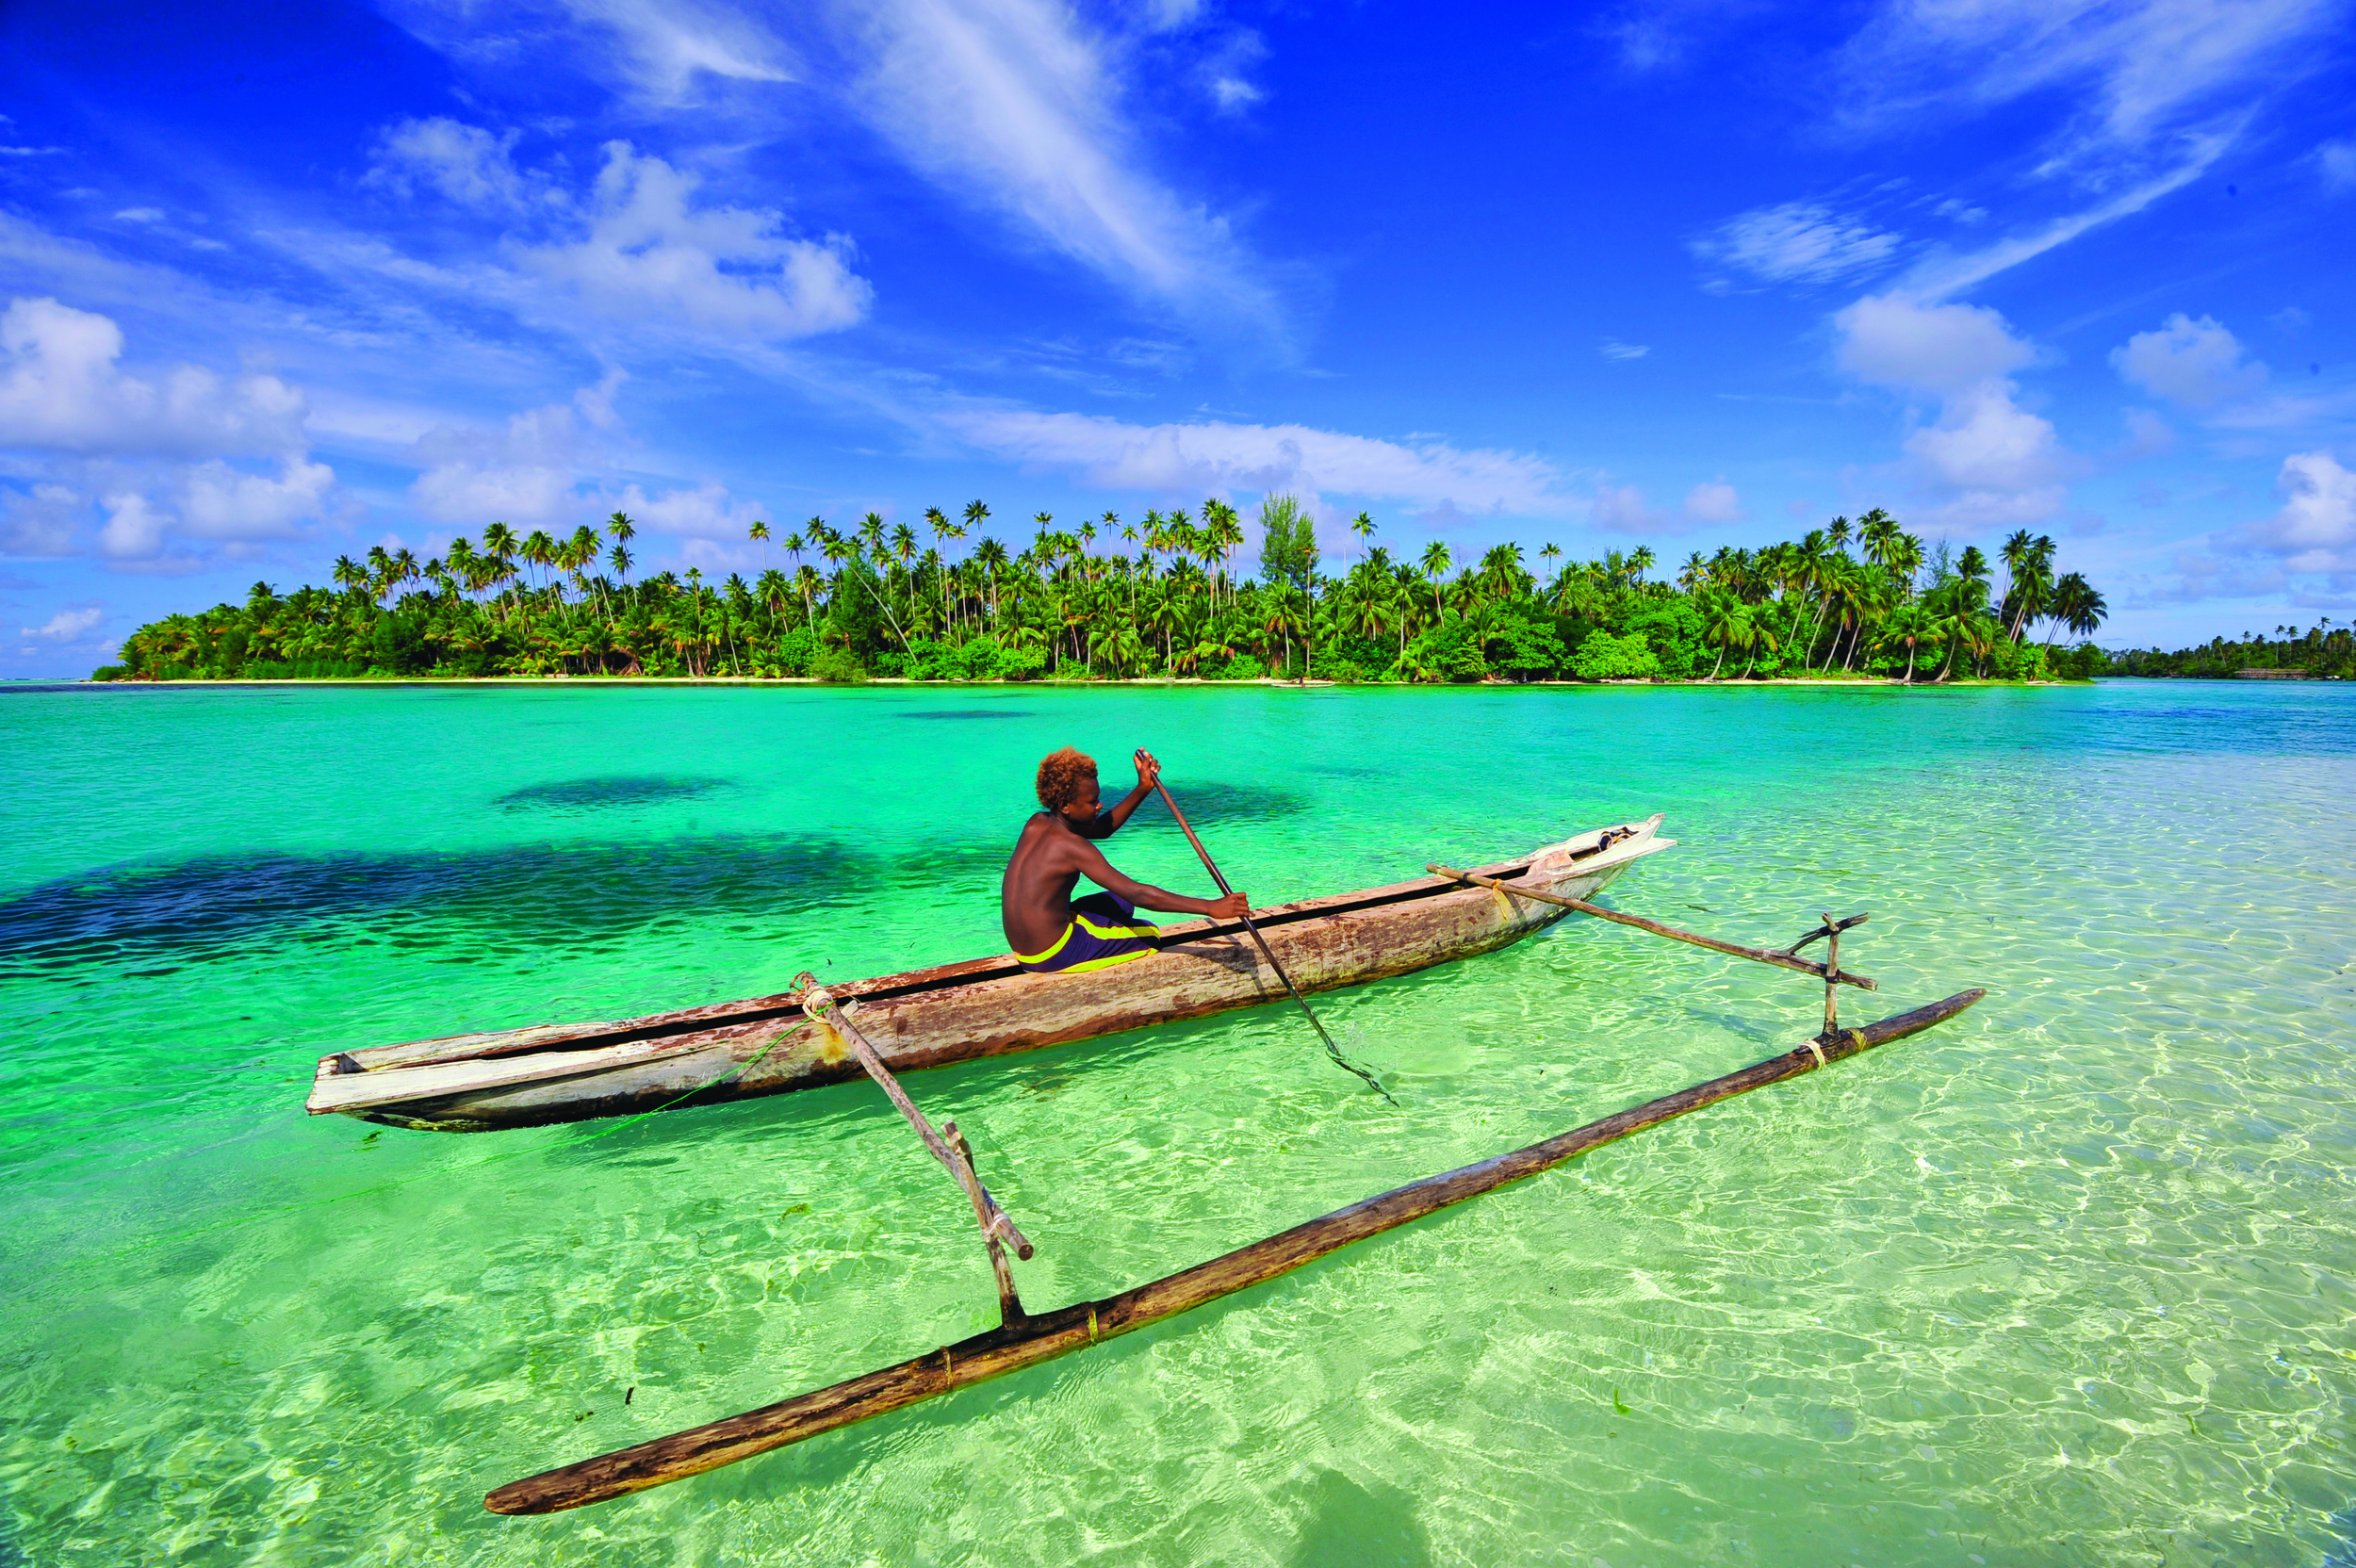  Image courtesy of David Kirkland / Papua New Guinea Tourism Promotion Authority 